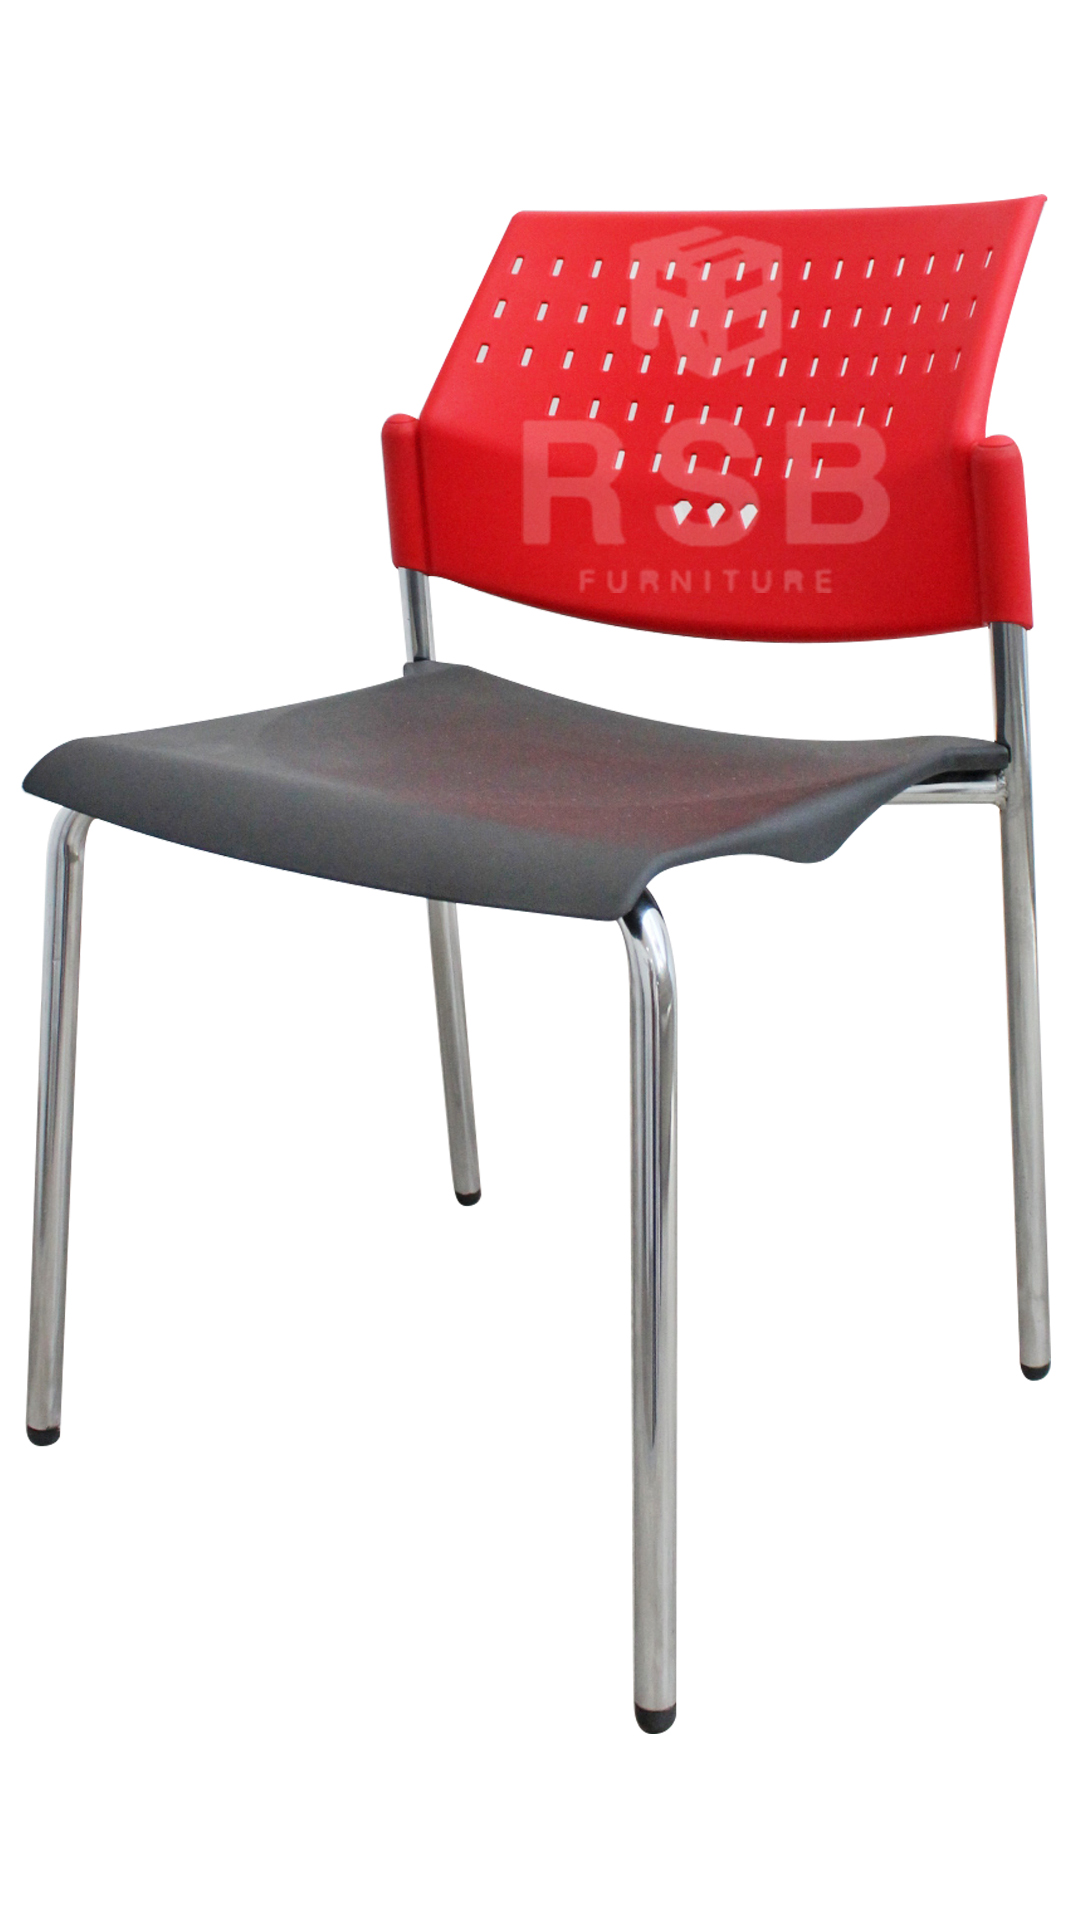 เก้าอี้สำนักงาน รุ่นขายดี พนักพิงรับกับหลัง รับน้ำหนัก 150 KG รหัส 603